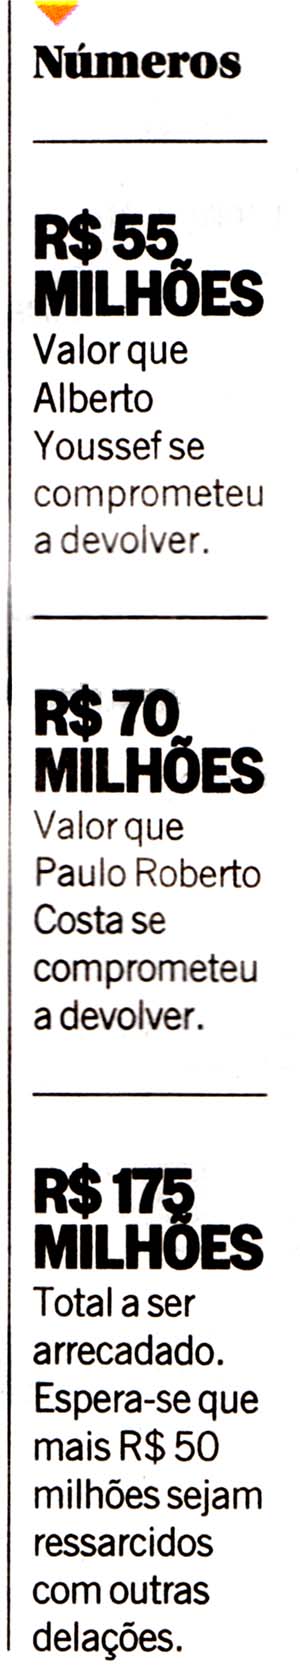 O Globo 30/10/14 - Petrobras: Ressarcimento milionrio